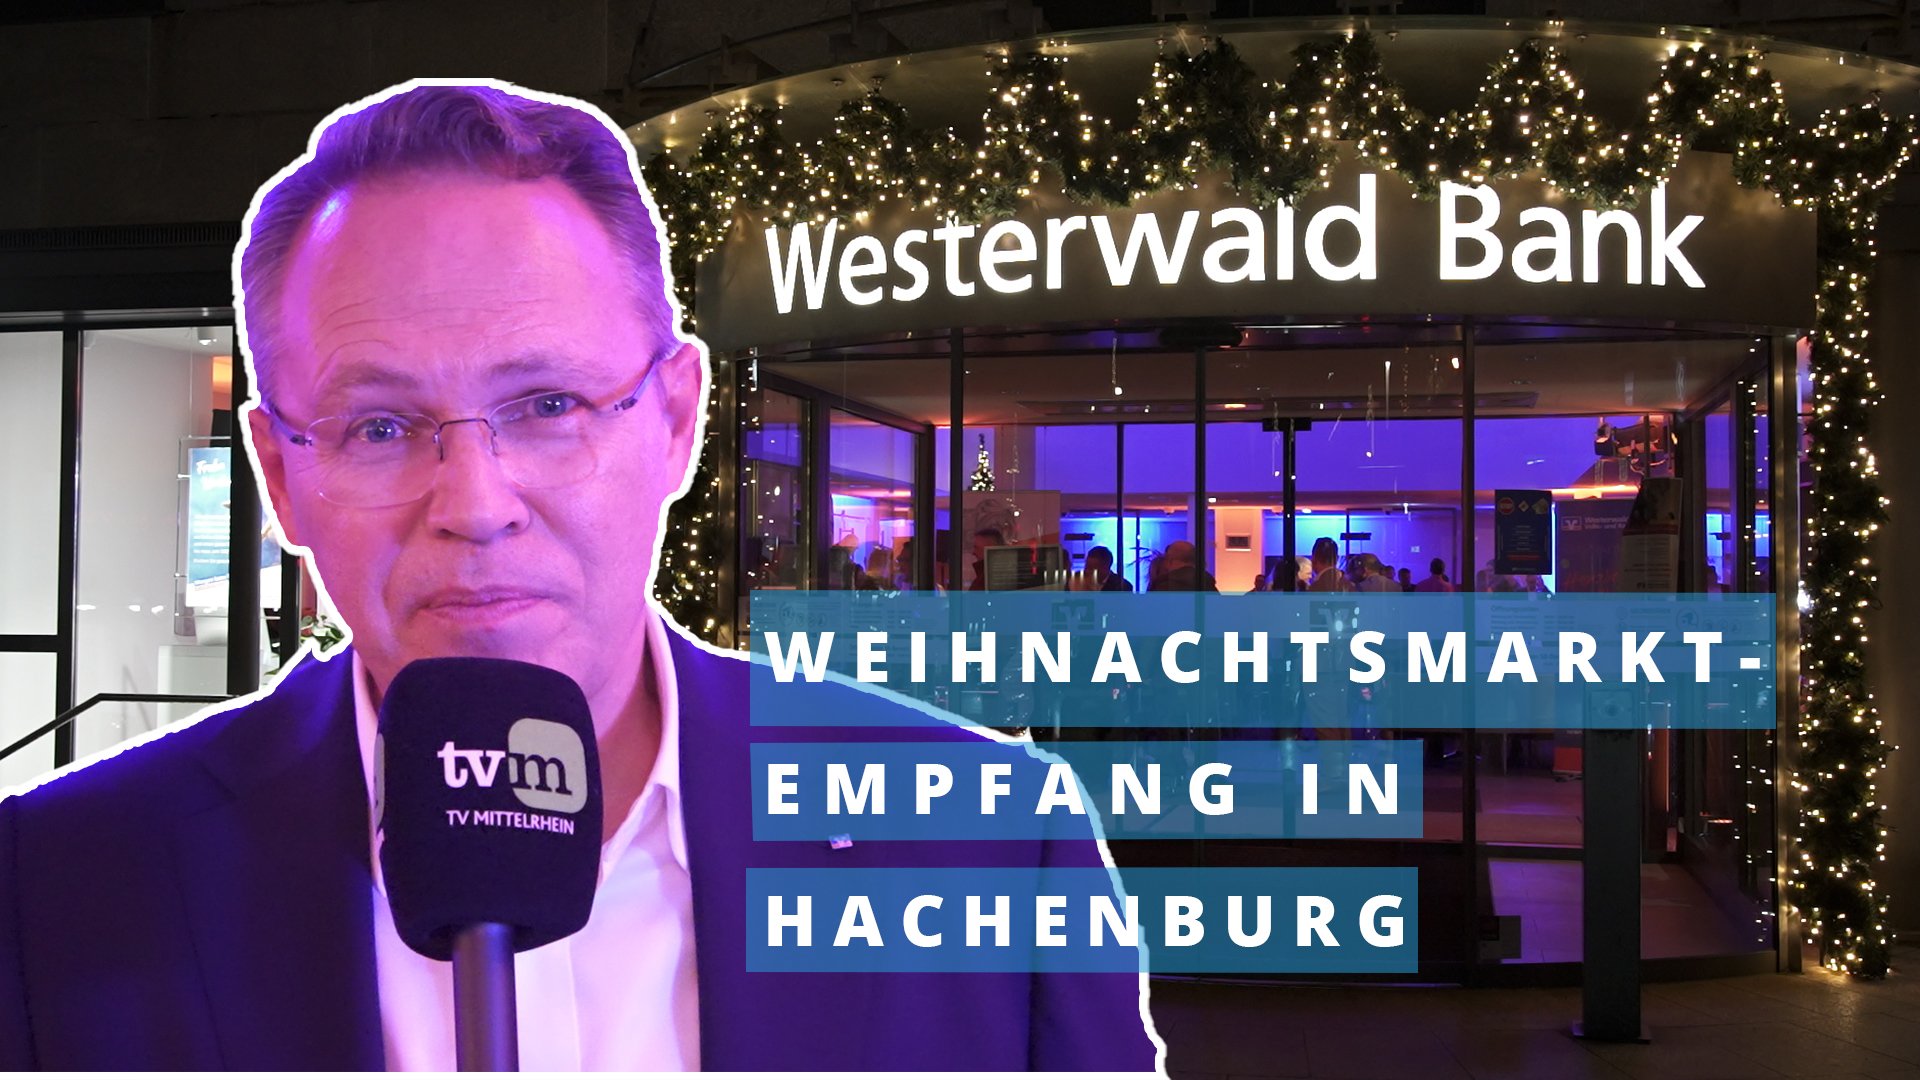 Westerwald Bank: Weihnachtsmarktempfang in Hachenburg